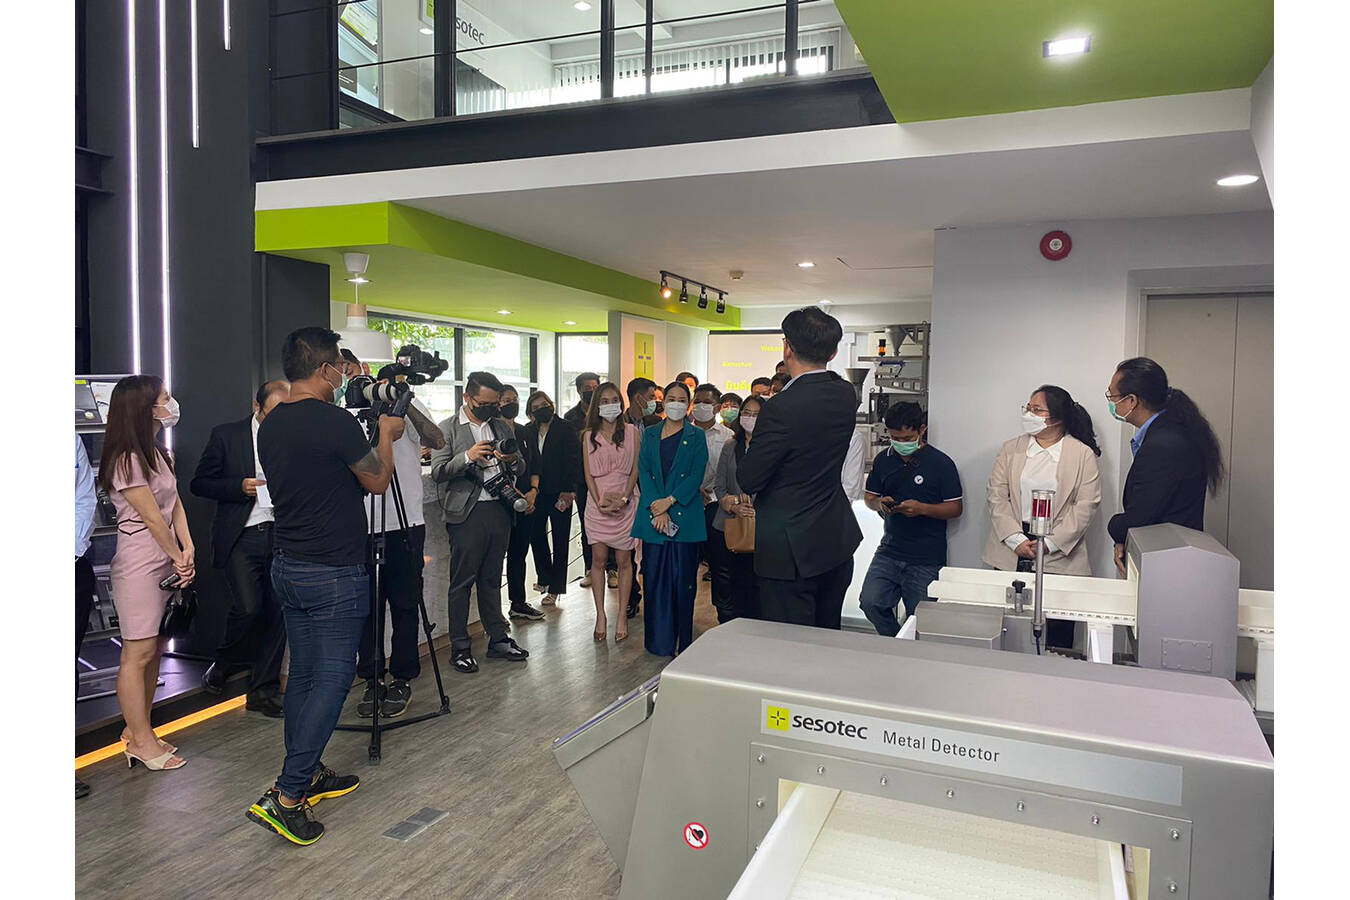 Sesotec Thailand: Neue Location mit Showroom in Bangkok Die thailändische Niederlassung der Sesotec GmbH ist dabei, um die Präsenz vor Ort zu verstärken und Produkte, Technologien und Serviceleistungen erlebbar machen